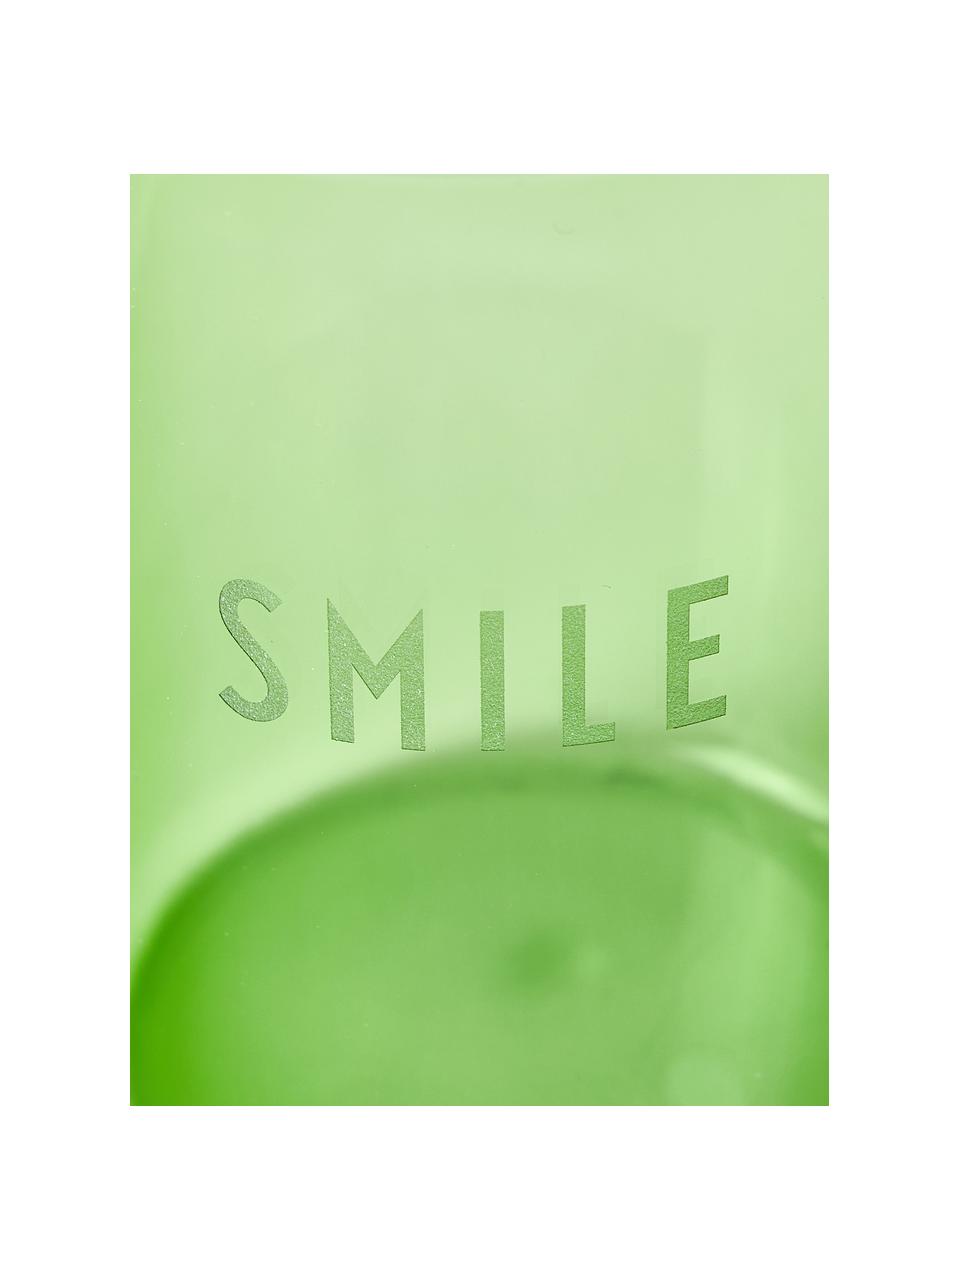 Szklanka Favourite, Szkło borokrzemowe, Zielony, transparentny, Ø 8 x W 11 cm, 350 ml